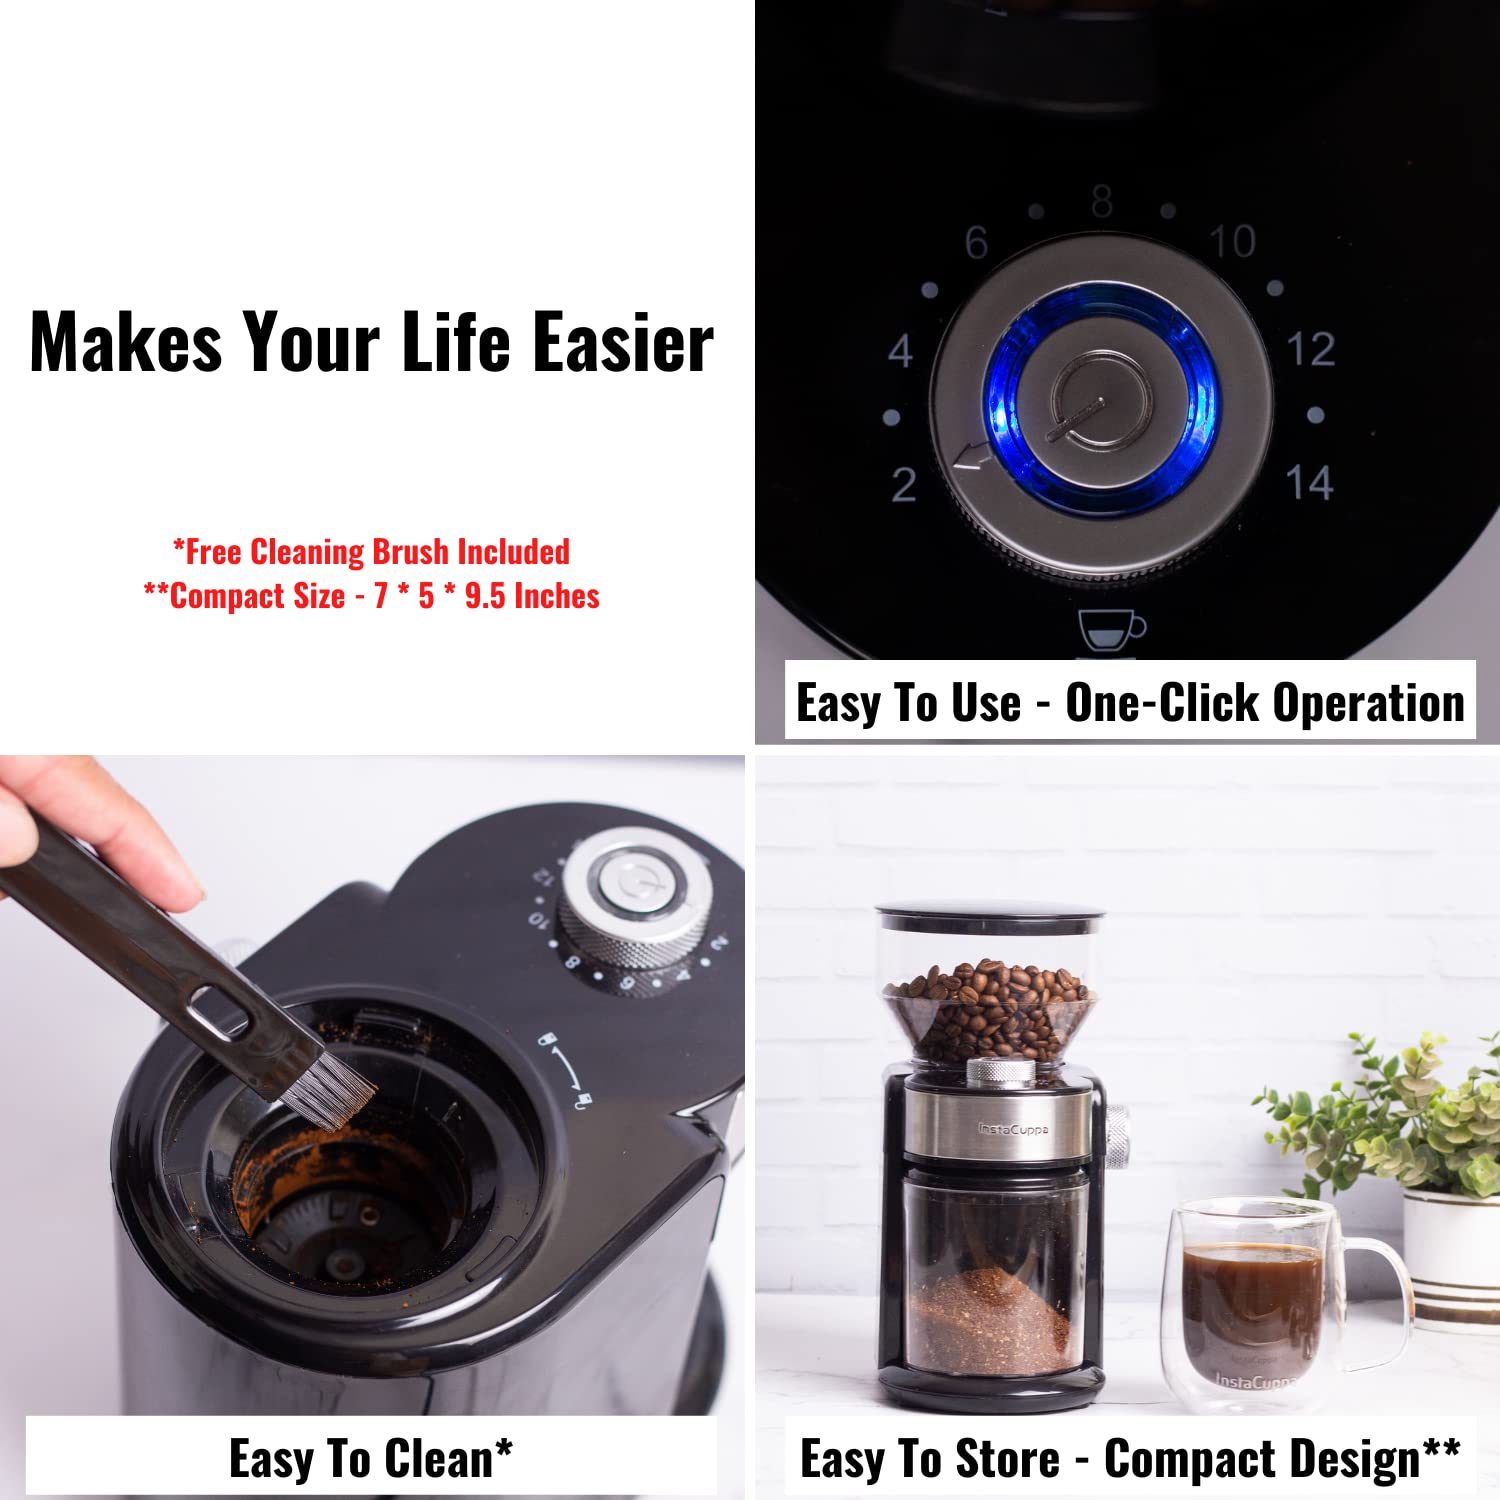 InstaCuppa Electric Moka Pot Espresso Maker 